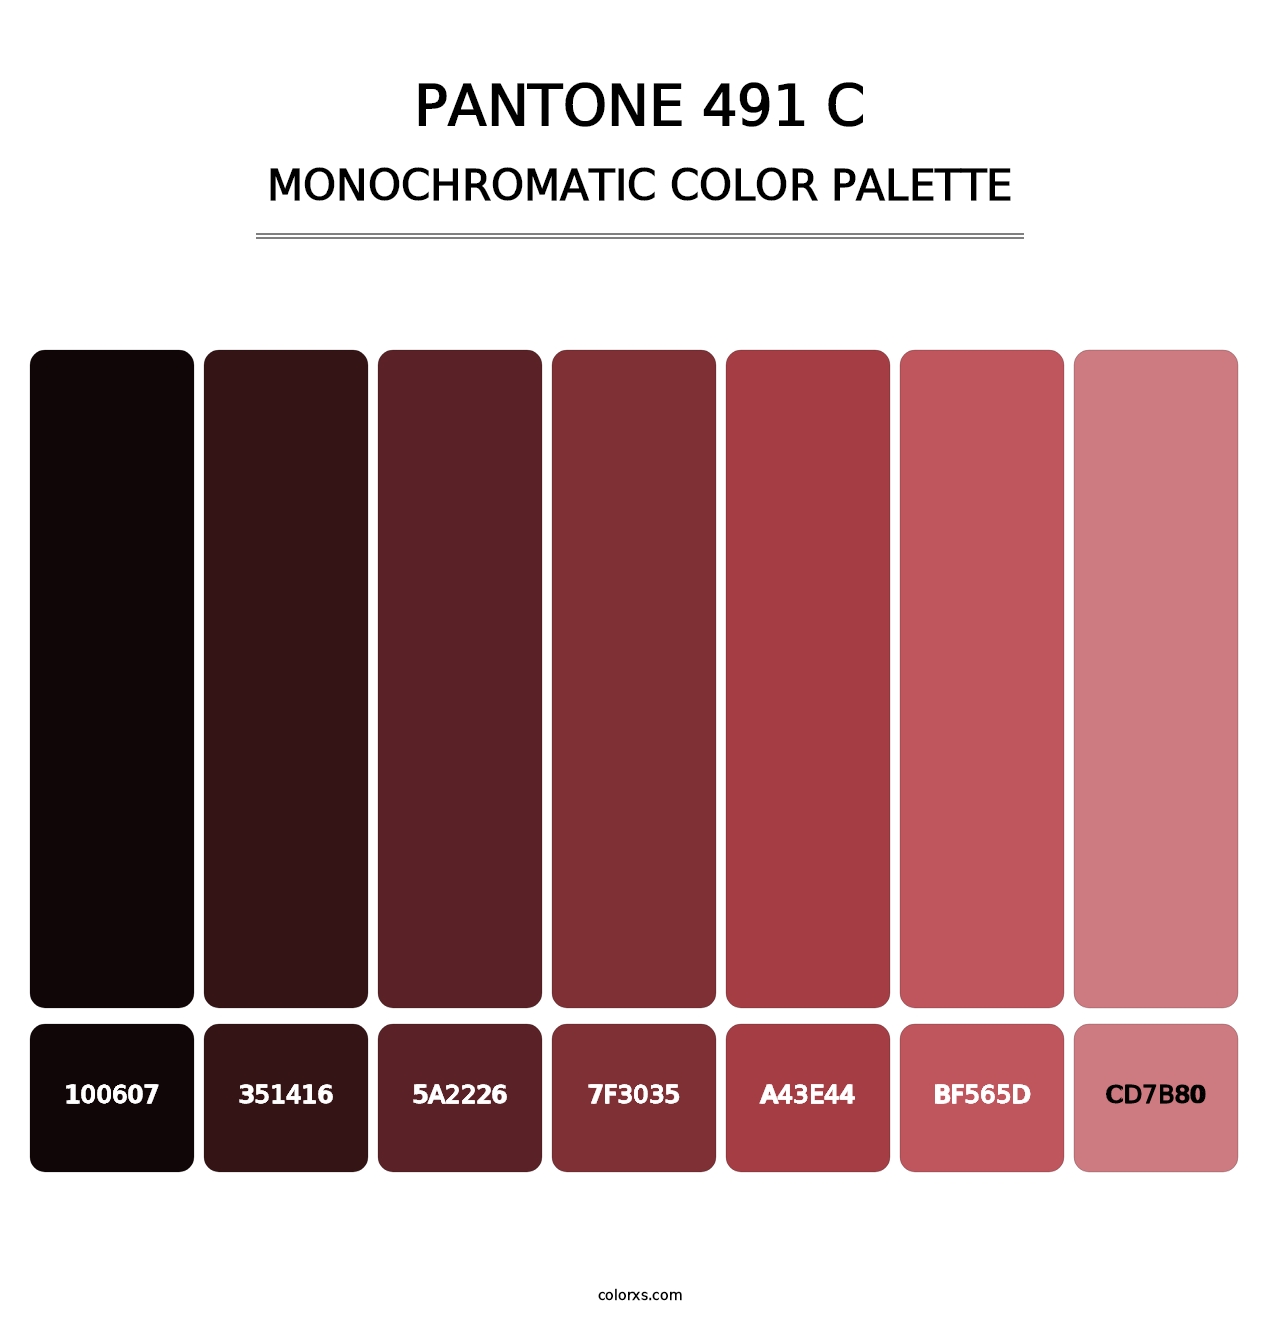 PANTONE 491 C - Monochromatic Color Palette